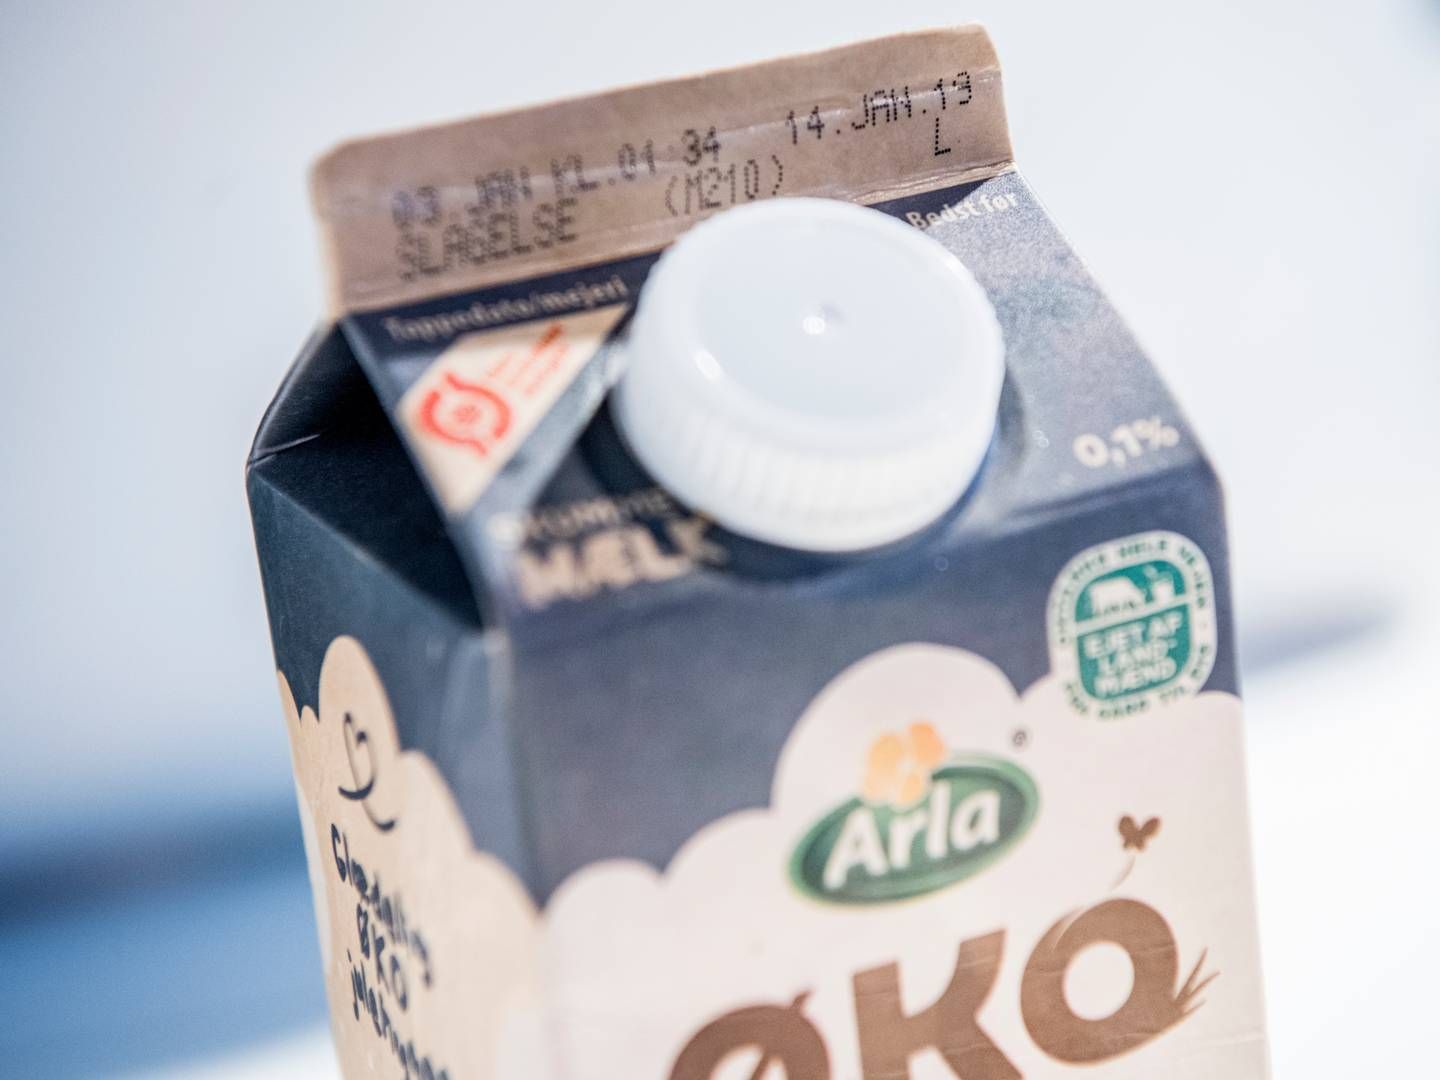 ”Når vi kigger lidt længere frem, er der stadig nogle kategorier, der har det svært, eksempelvis frisk mælk," siger Henrik Lilballe Hansen. | Foto: Linda Johansen